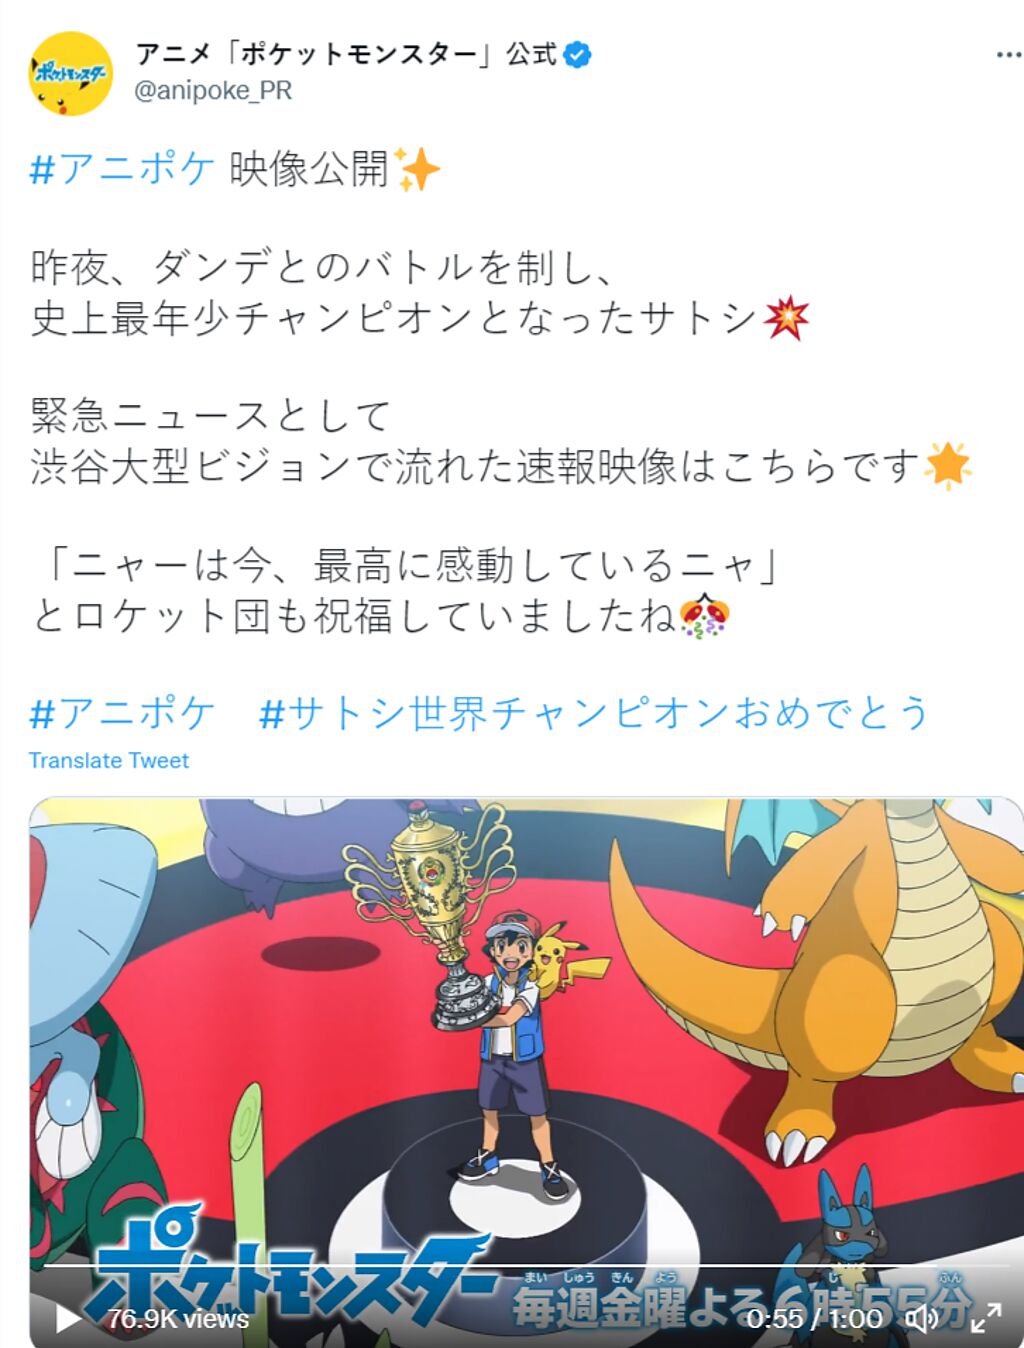  寶可夢官方推特分享小智奪冠喜訊。( 圖/アニメ「ポケットモンスター」公式推特)